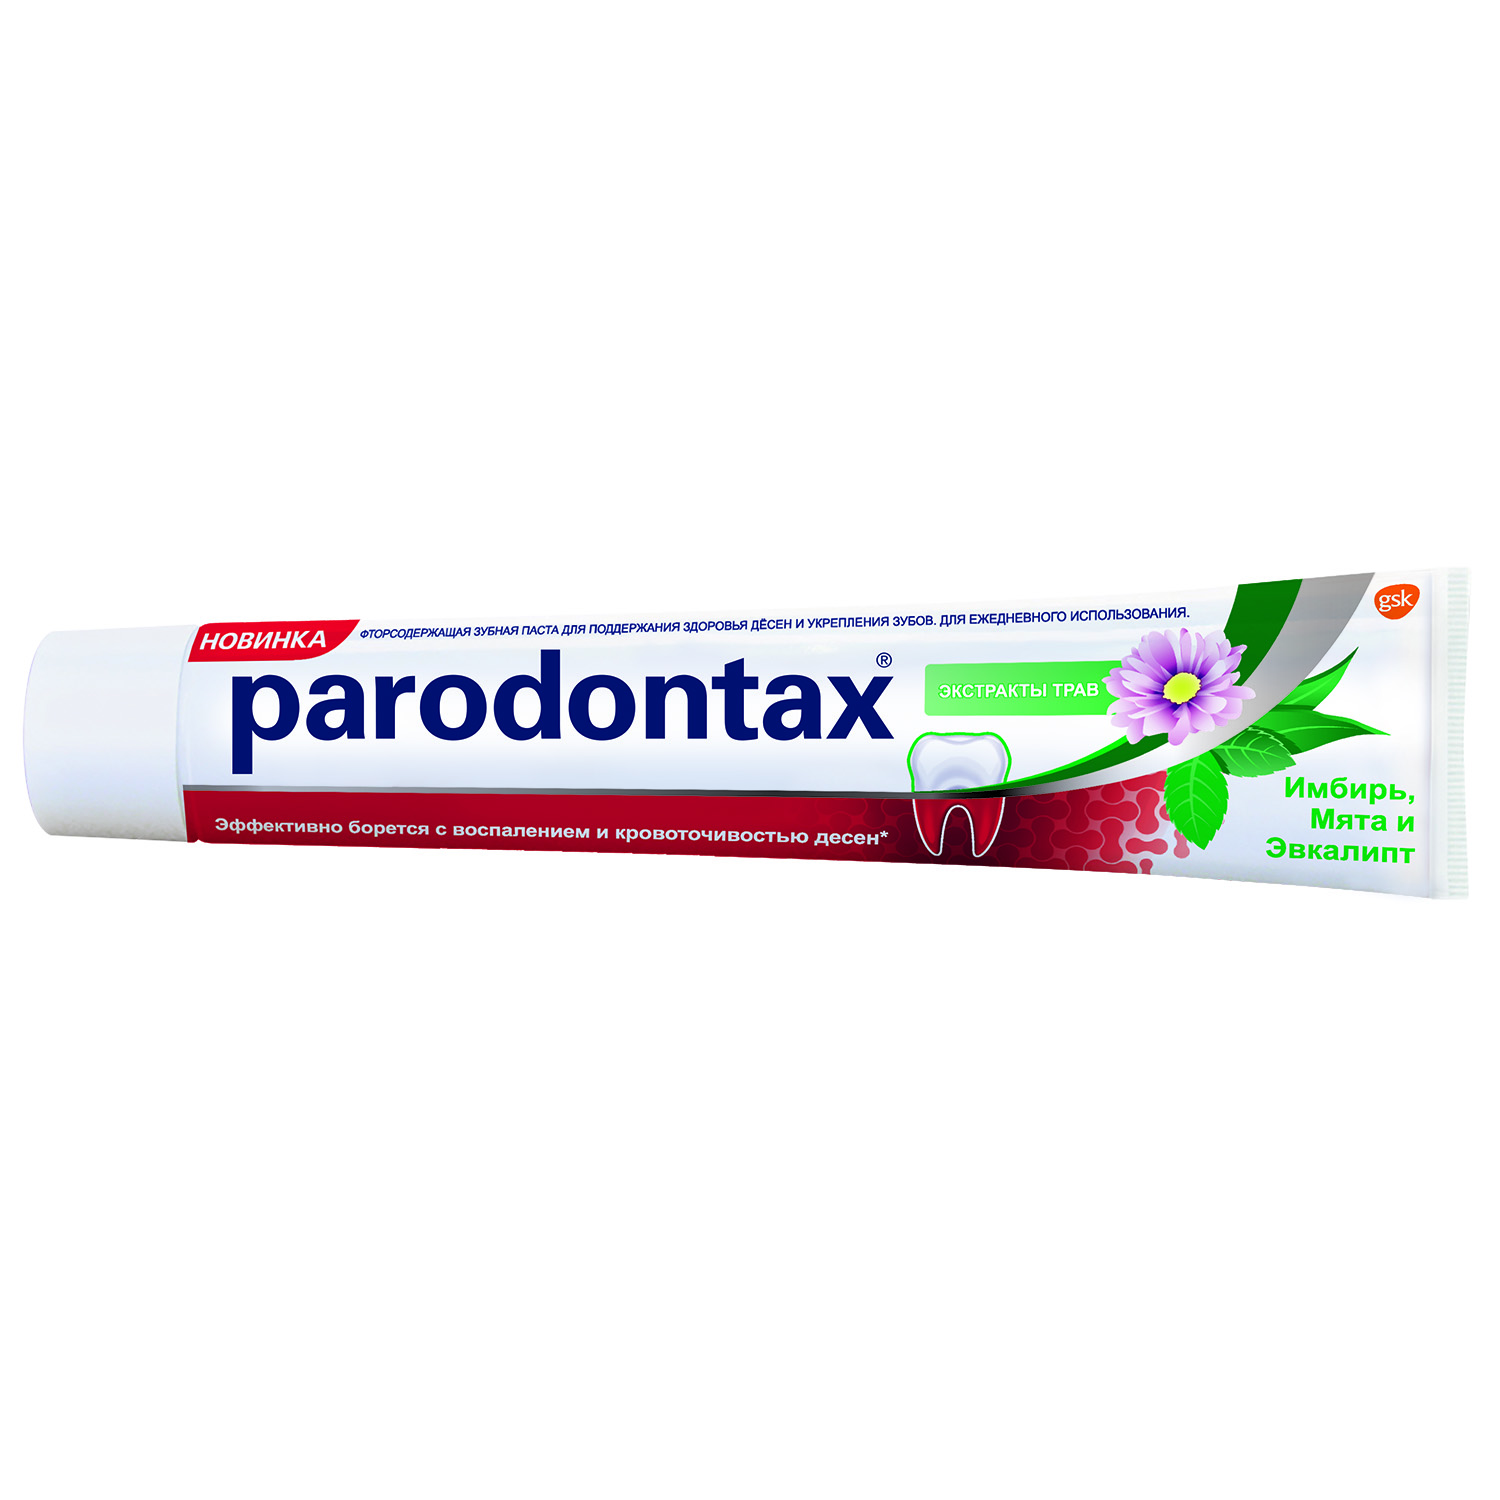 Зубная паста Paradontax Экстракты трав 75мл - фото 1